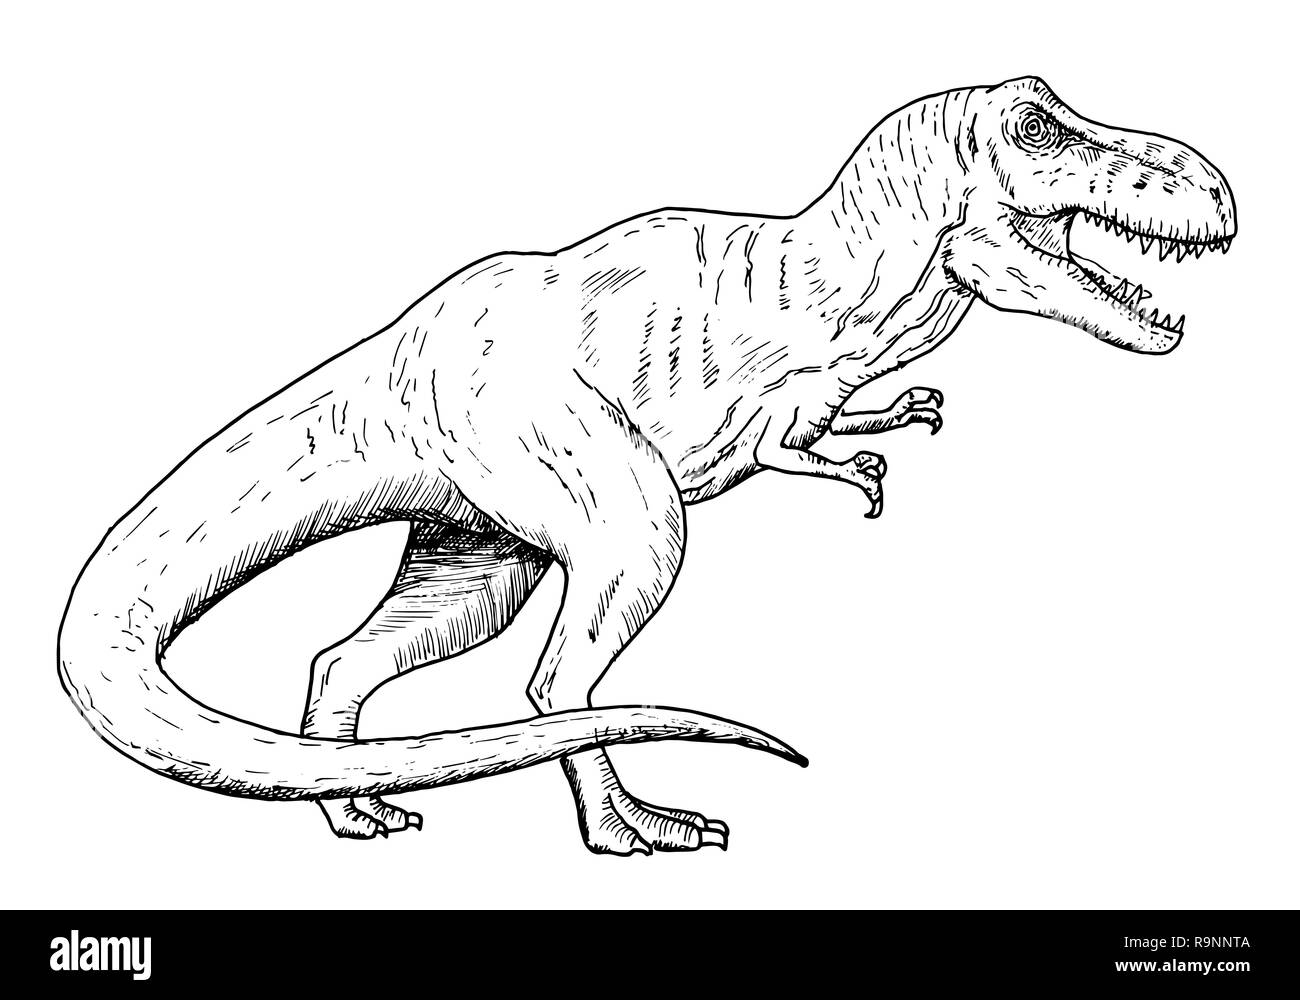 Disegno Di Dinosauro Schizzo A Mano Del Tyrannosaurus Rex In Bianco E Nero Illustrazione Immagine E Vettoriale Alamy